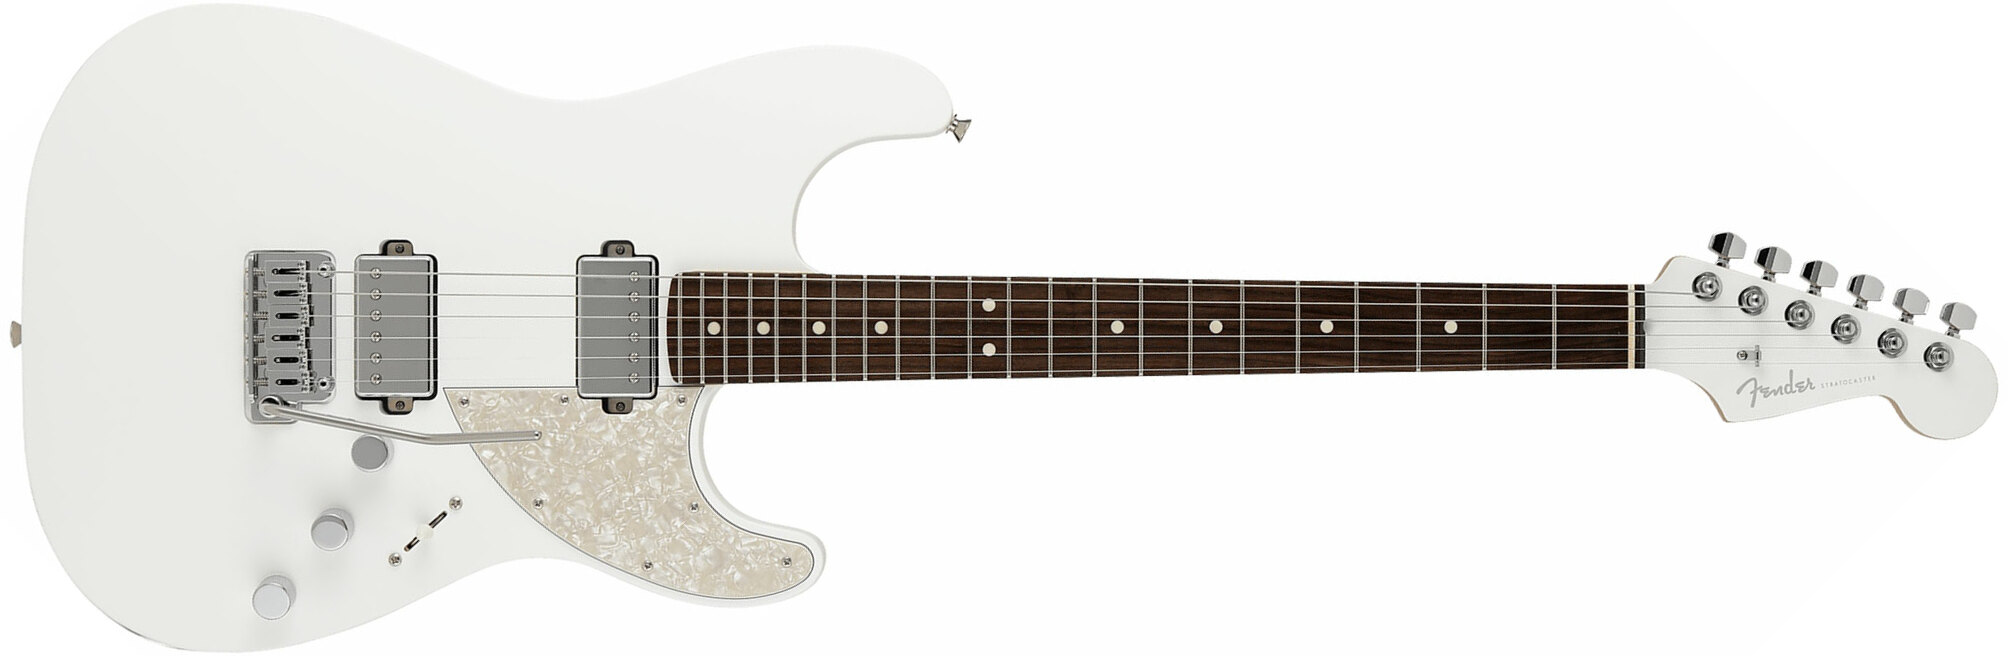 Fender Strat Elemental Mij Jap 2h Trem Rw - Nimbus White - Elektrische gitaar in Str-vorm - Main picture